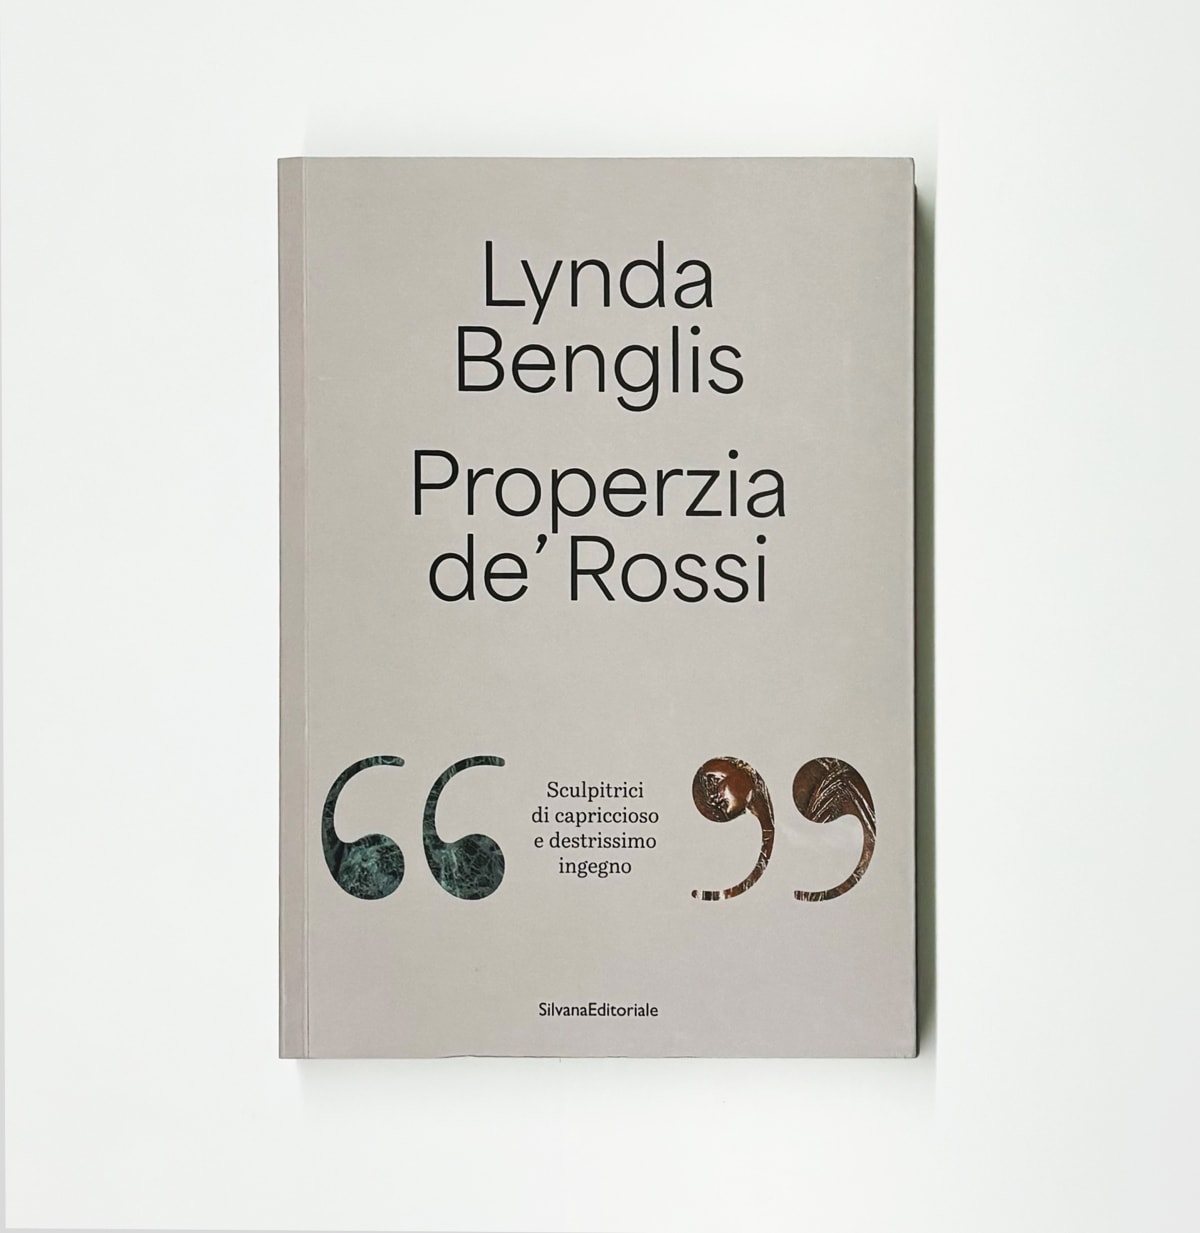 Lynda Benglis & Properzia de’ Rossi: Sculpitrici di capriccioso e destrissimo ingegno